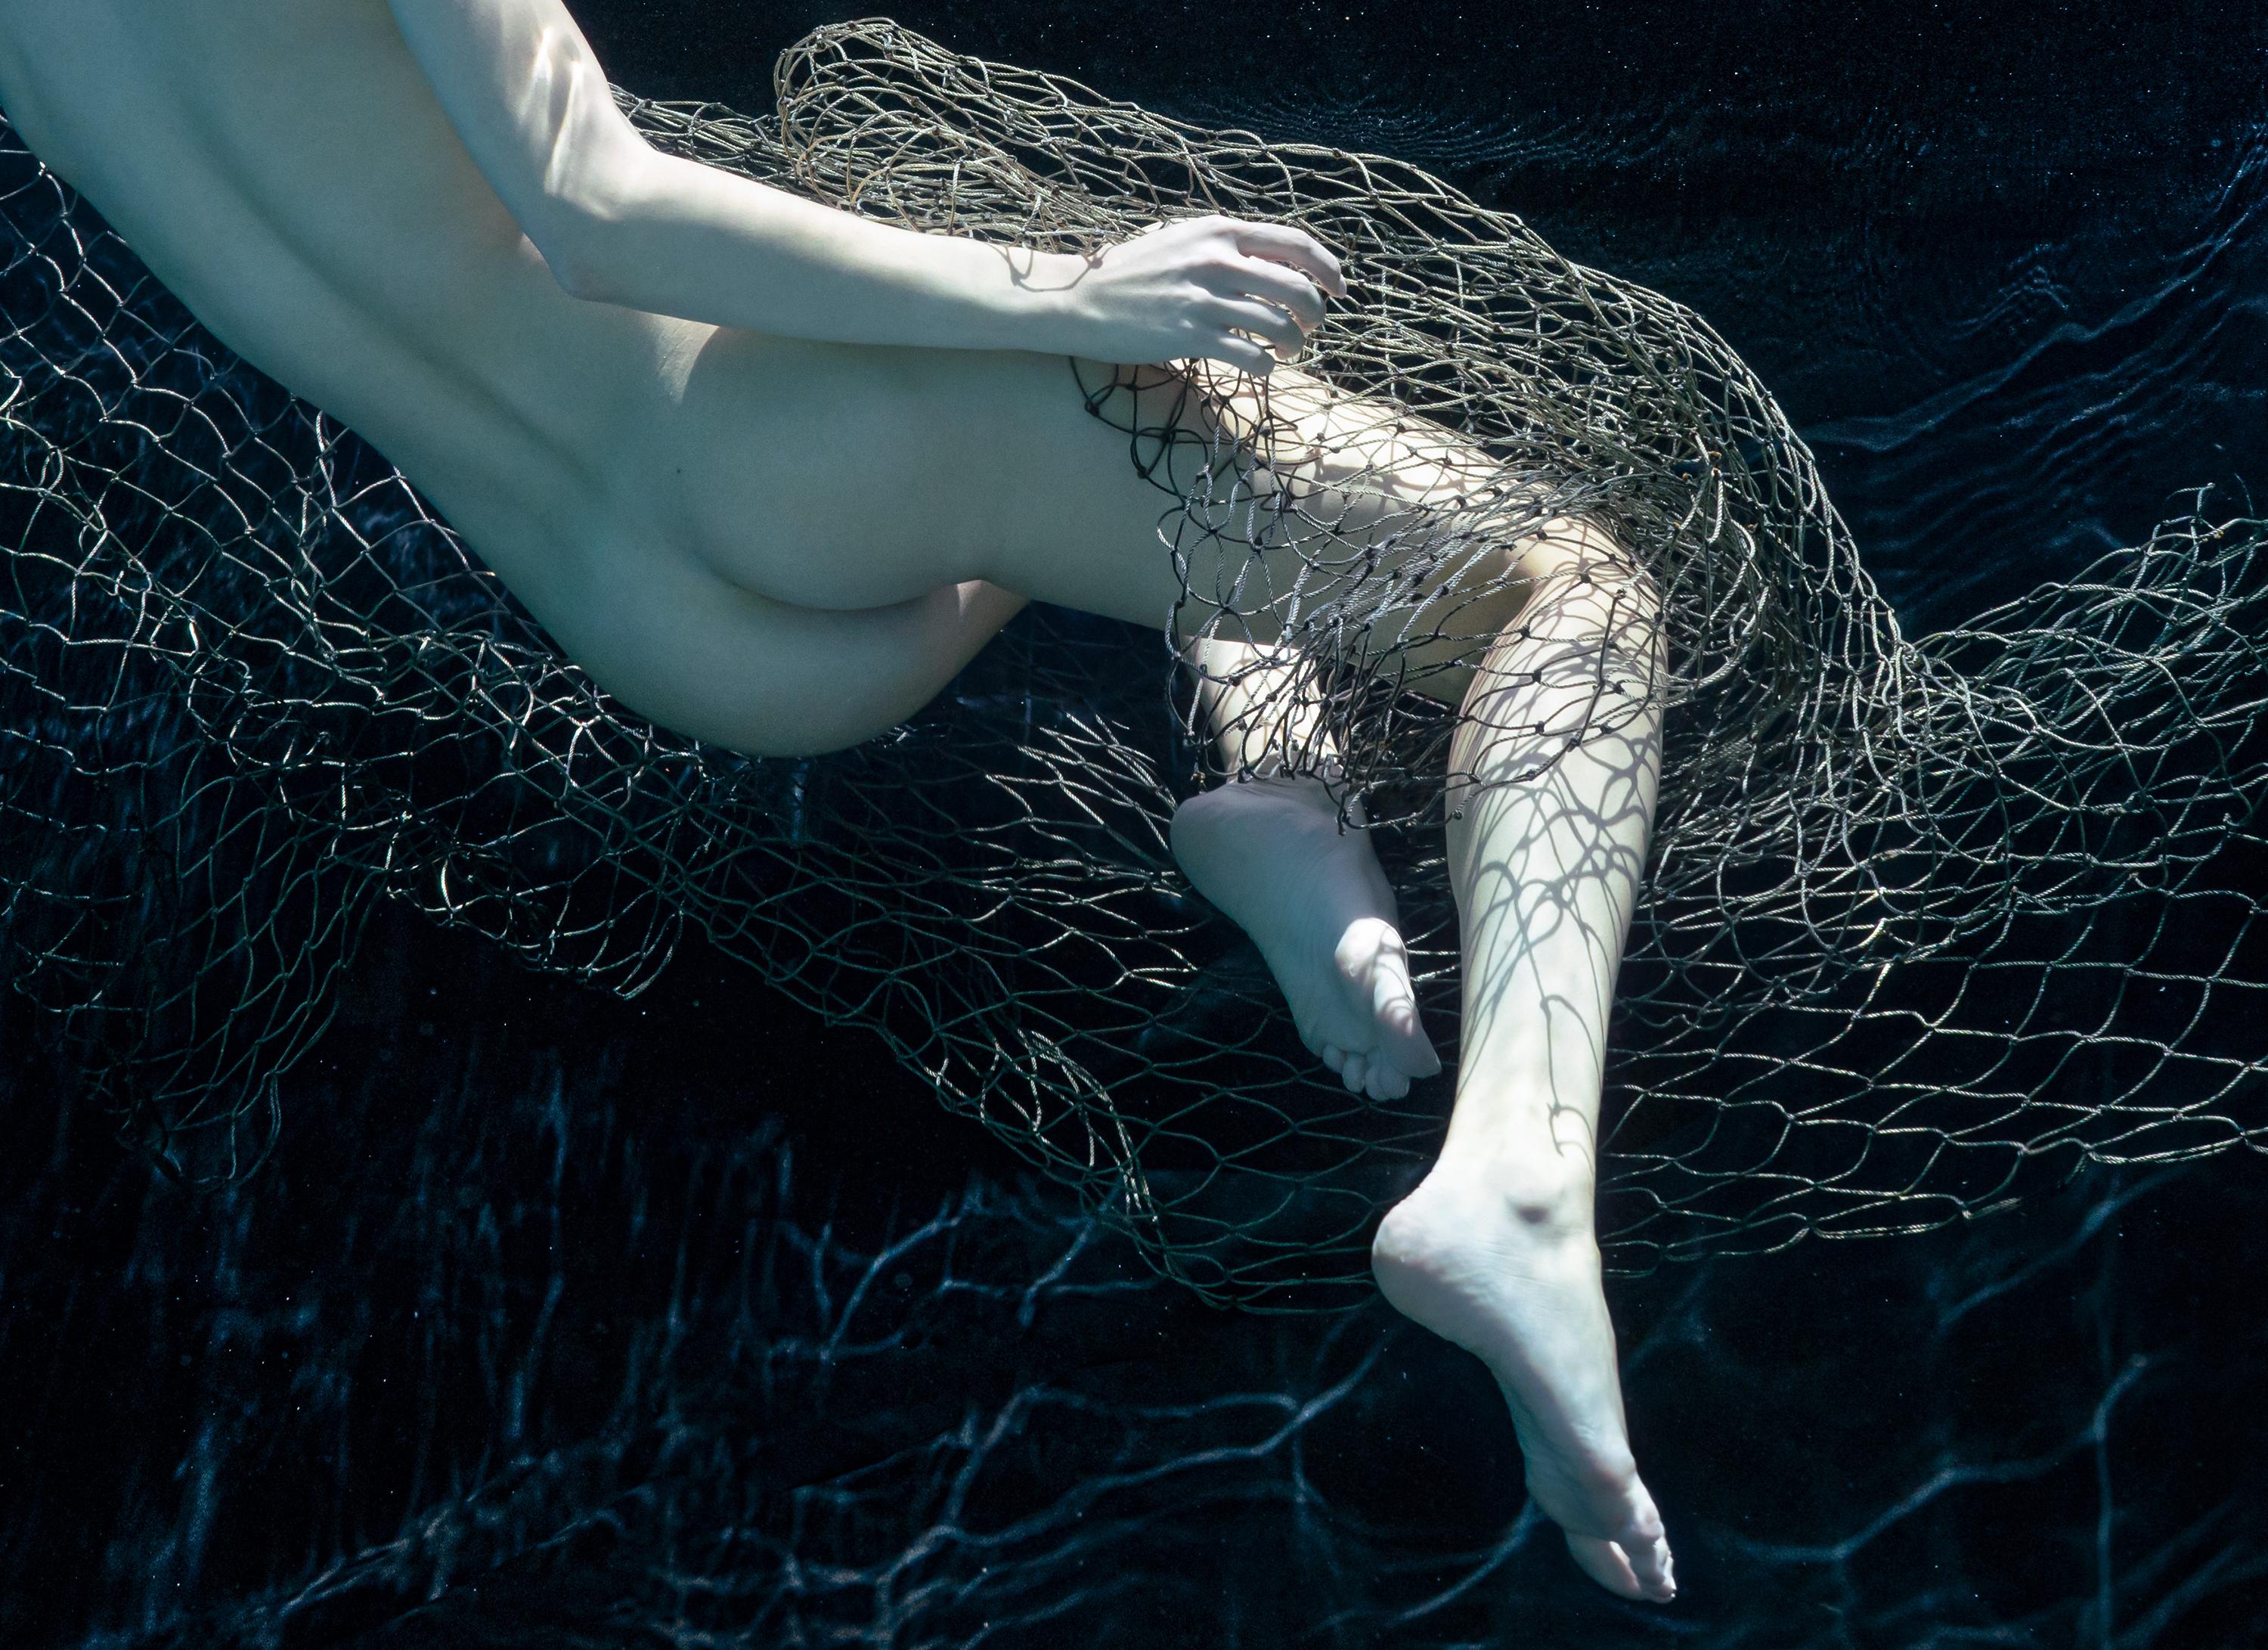 Photographie sous-marine presque monochrome d'une jeune femme nue enveloppée dans un filet de pêche.

Tirage numérique original aux pigments d'archives signé par l'artiste.
Edition limitée à 24 exemplaires. 
Taille du papier : 36